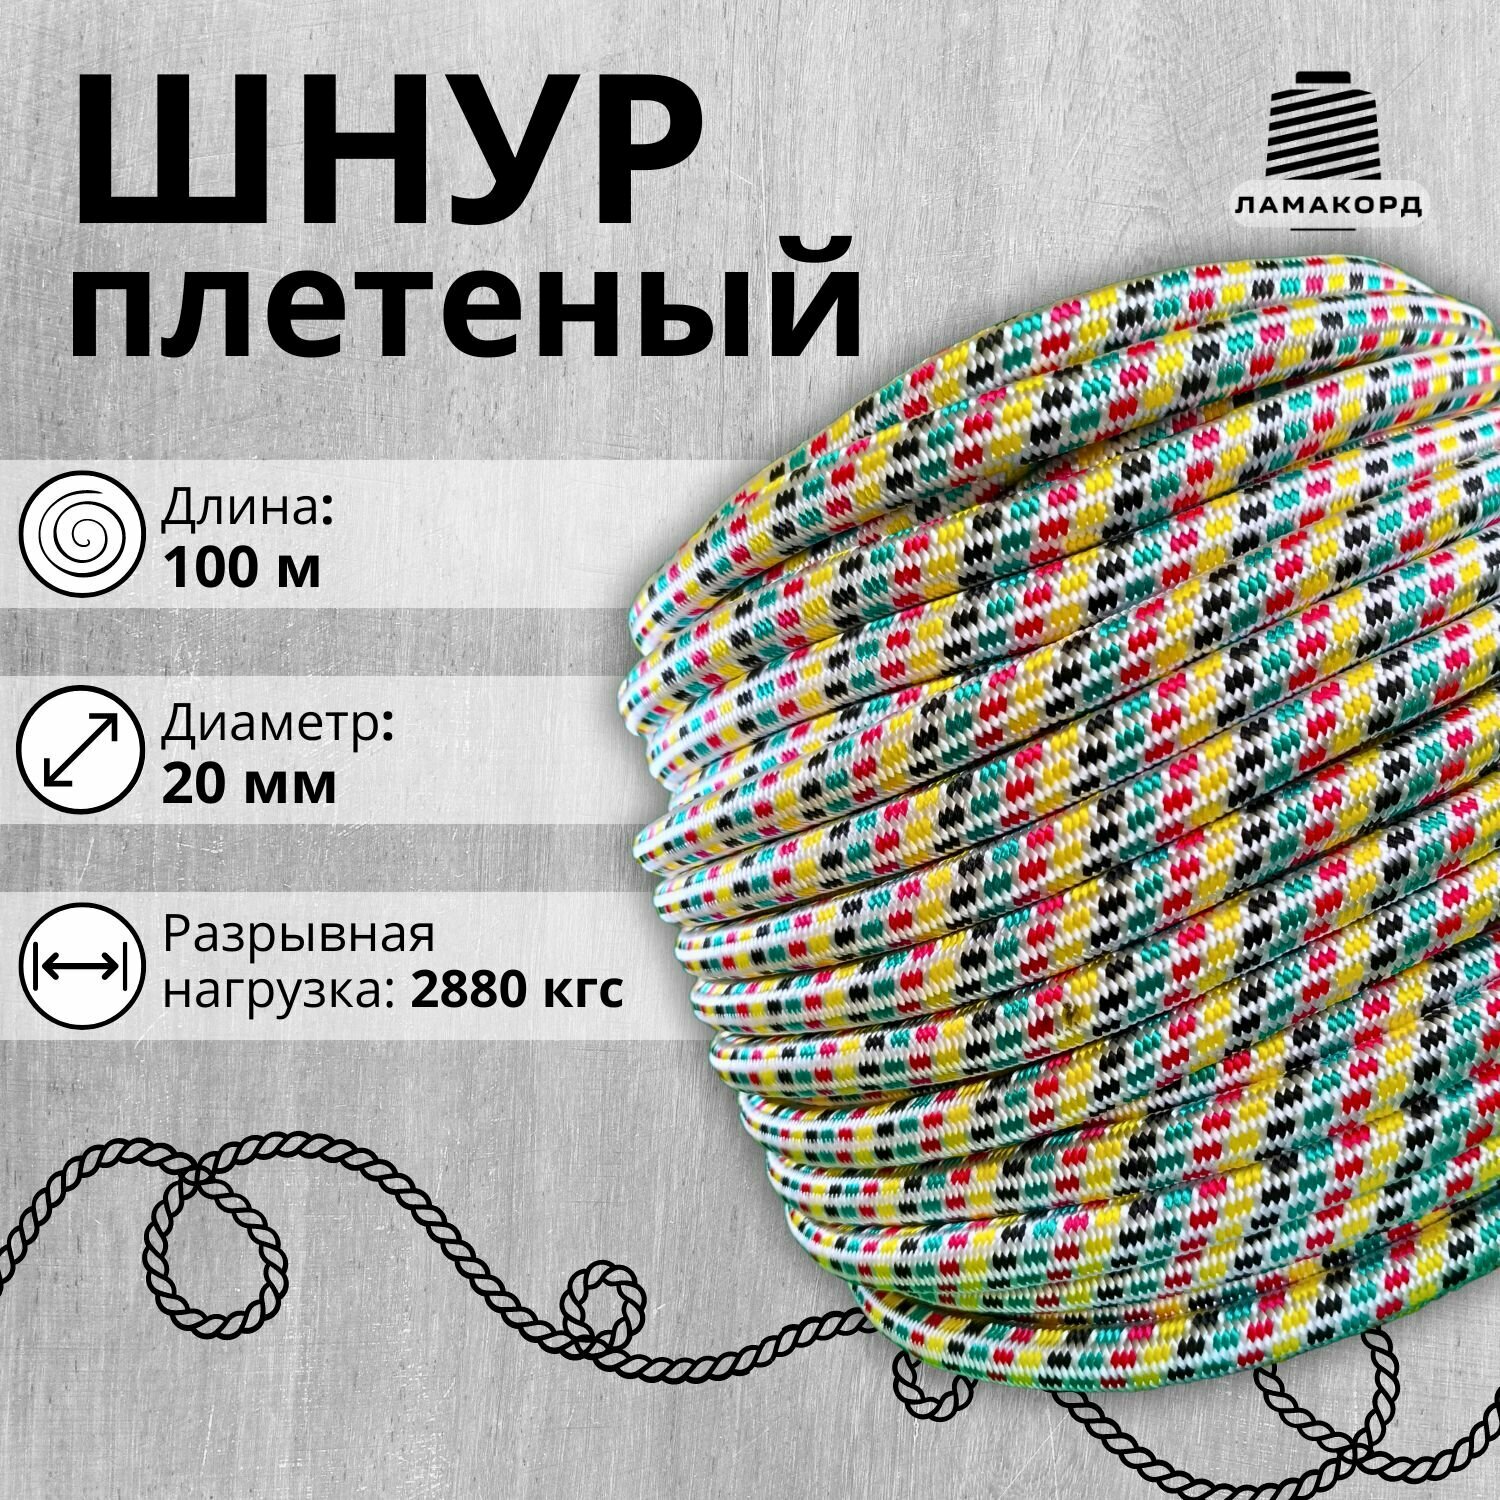 Шнур/Веревка полипропиленовая с сердечником 20 мм, 100 м, универсальная, высокопрочная, цветная